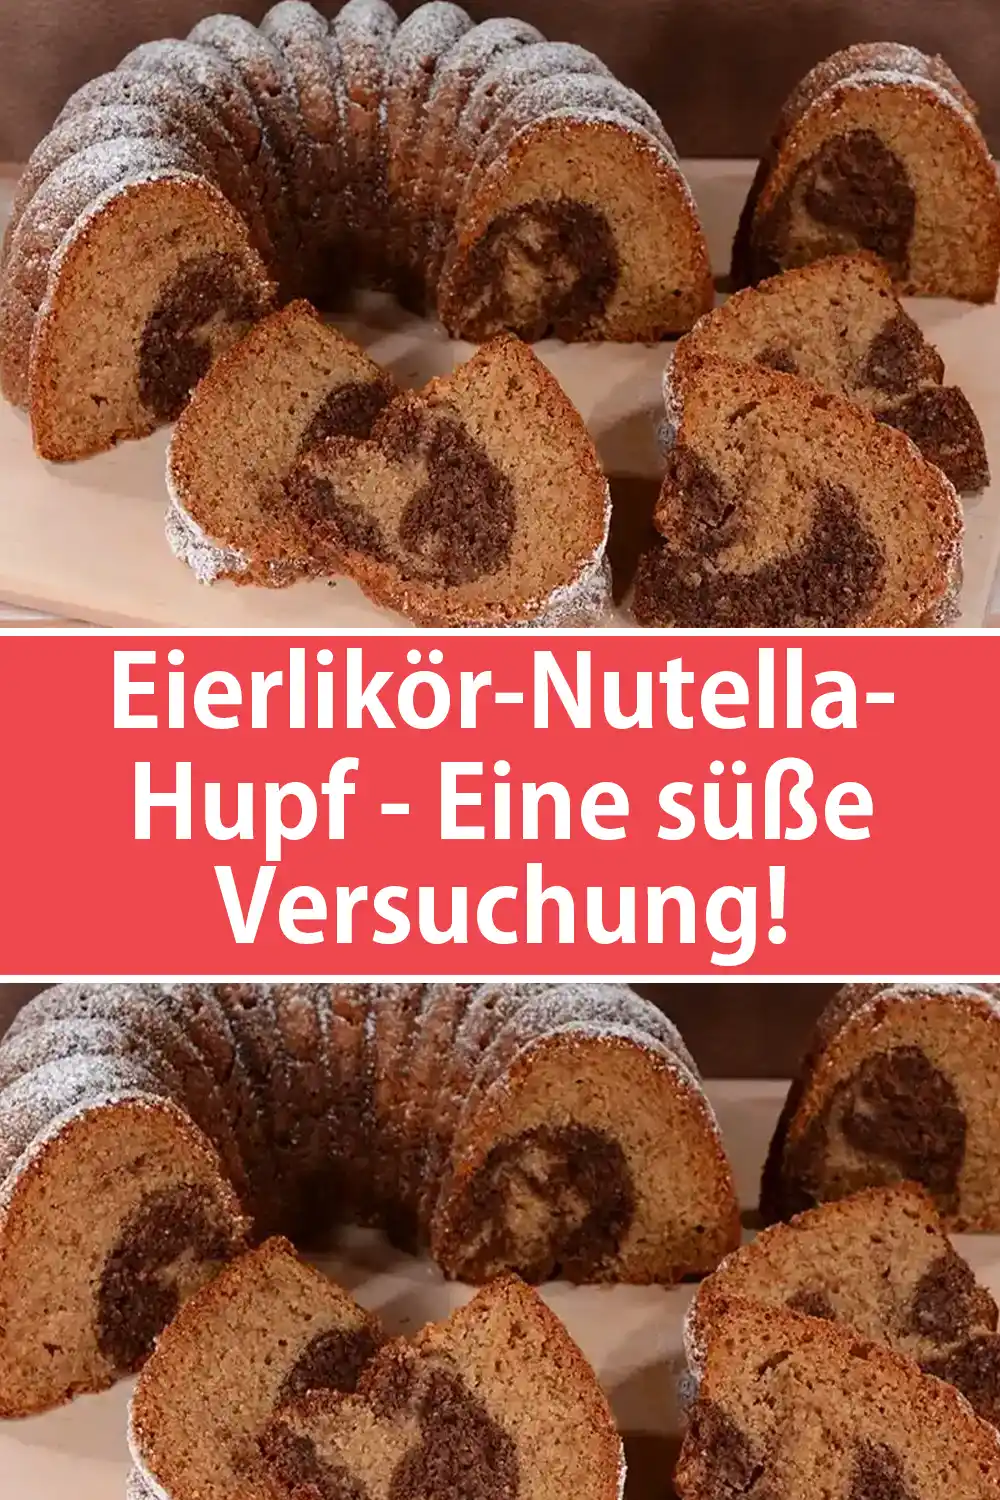 Eierlikör-Nutella-Hupf - Eine süße Versuchung!